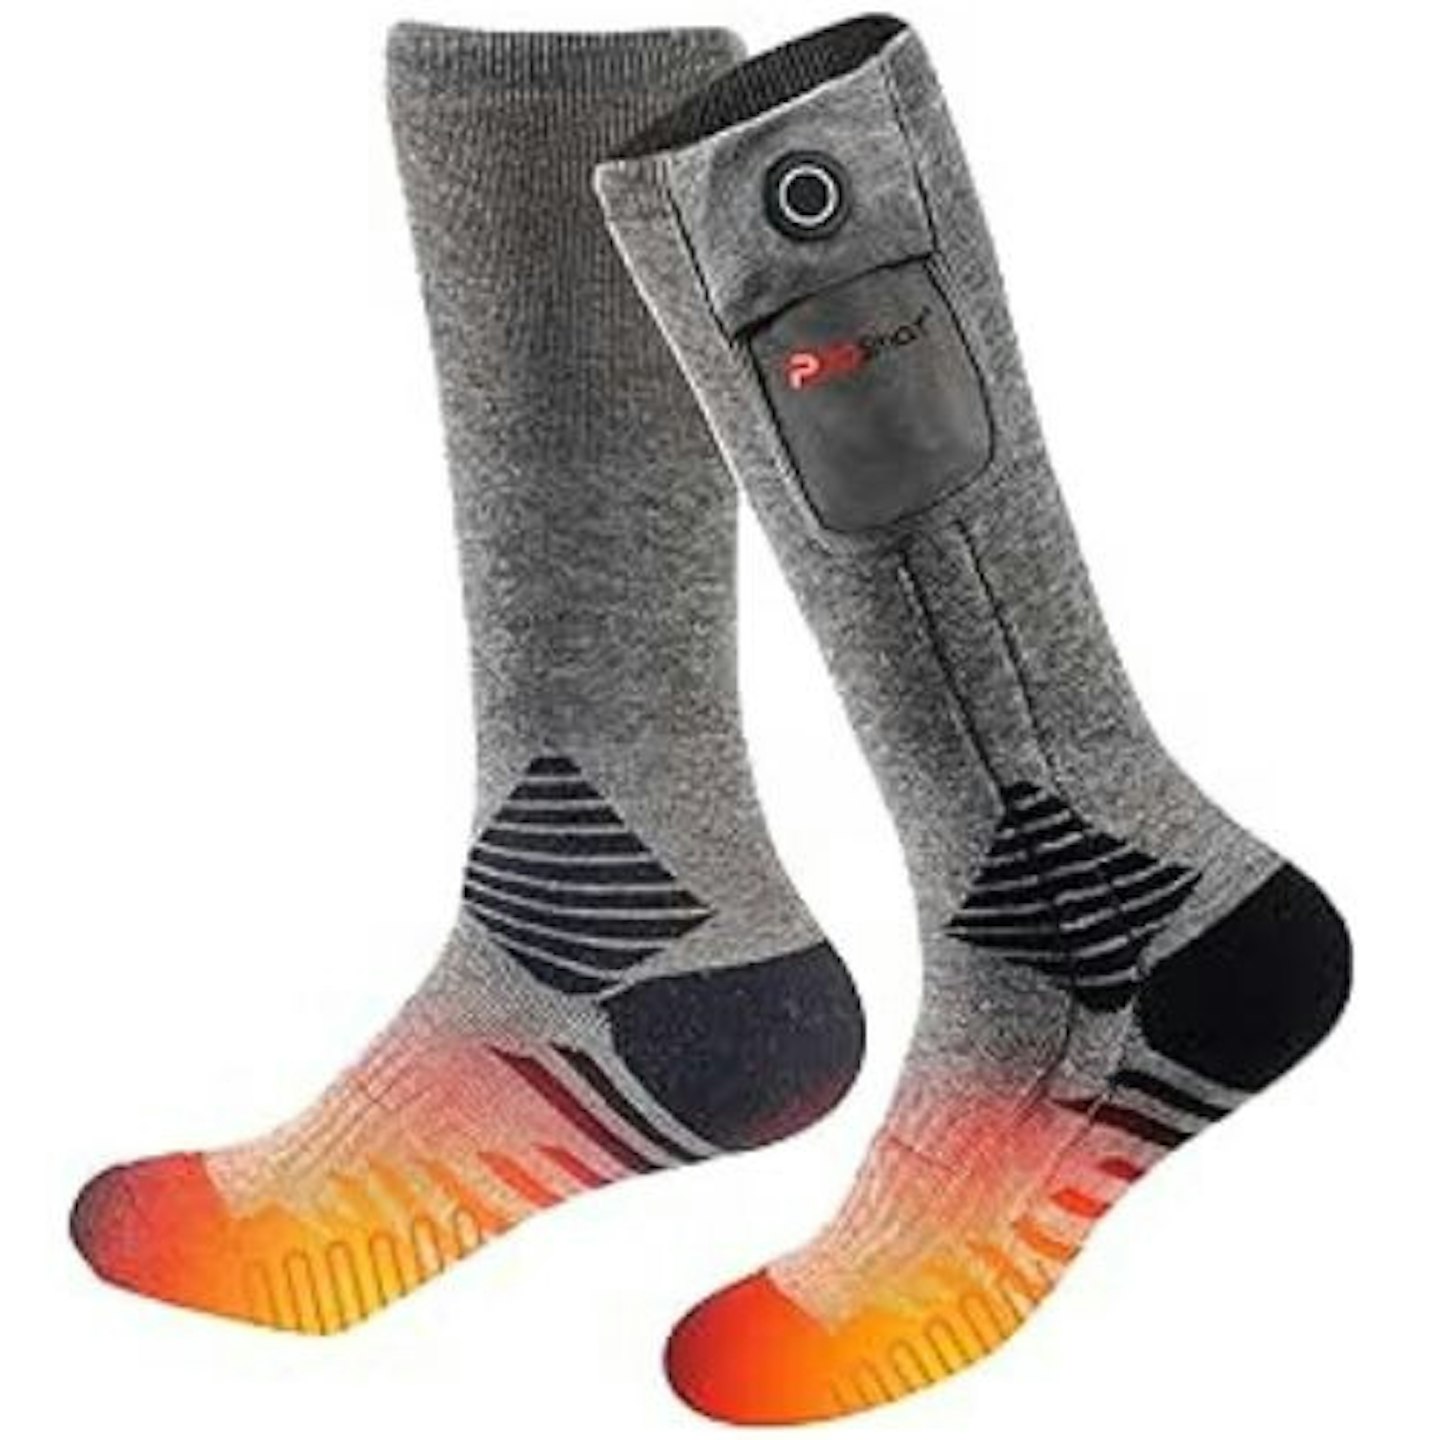 PROSmart Heated Socks